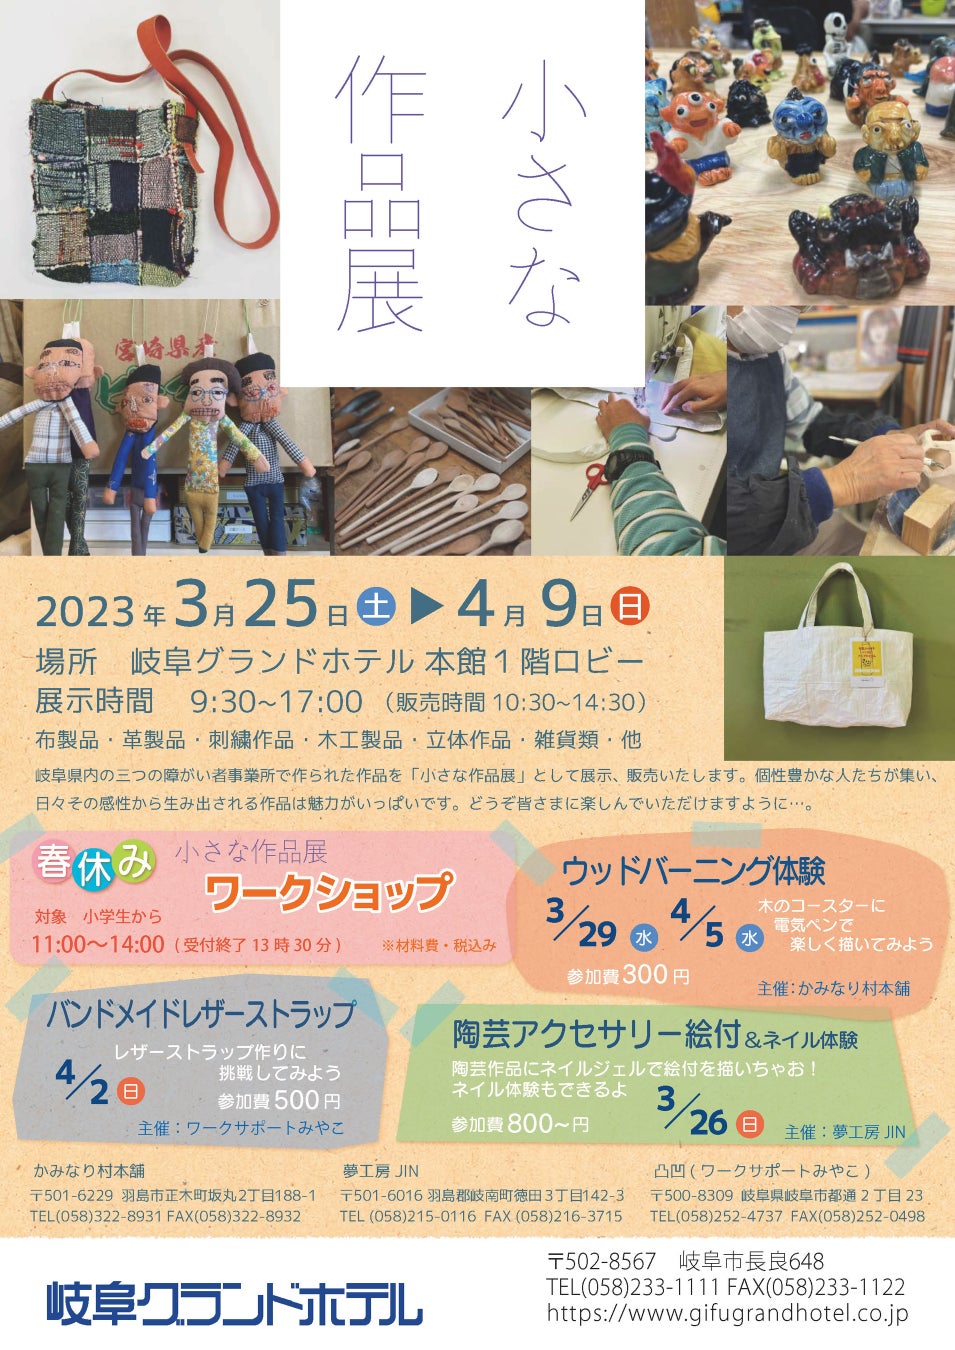 完全予約プライベートサウナ『アカサカサウナ』が2023年4月、赤坂見附駅徒歩2分にオープン決定！